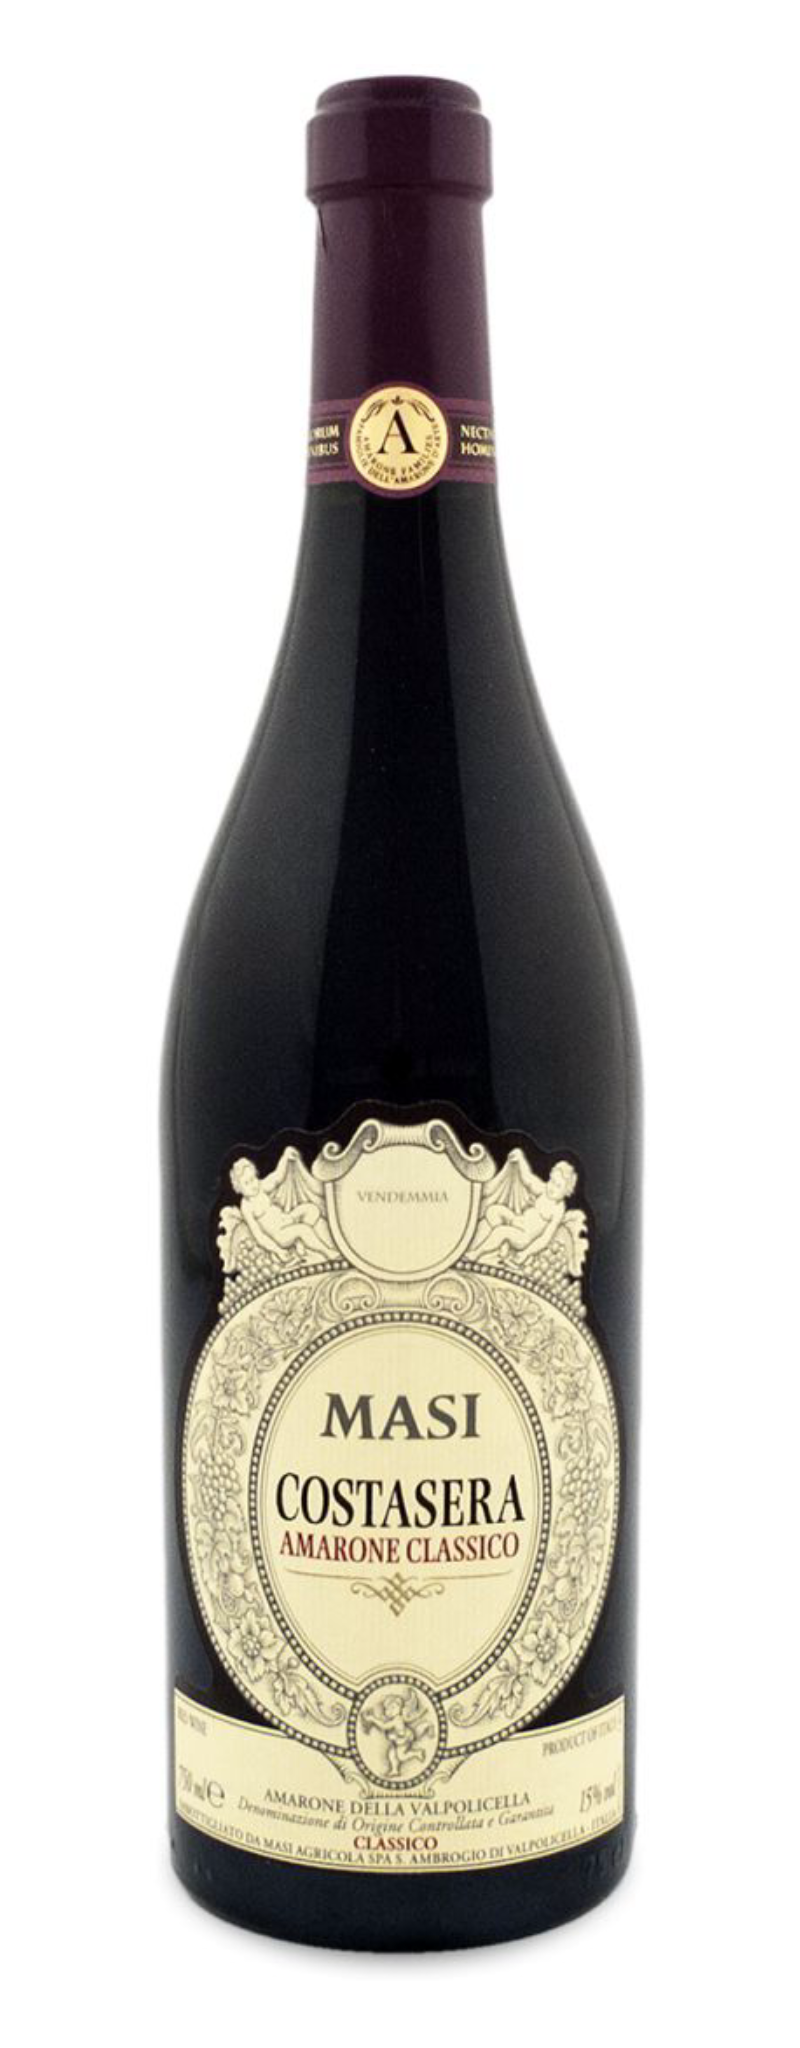 Masi, Costasera Amarone Classico, Amarone della Valpolicella Classico DOCG  - 750ml